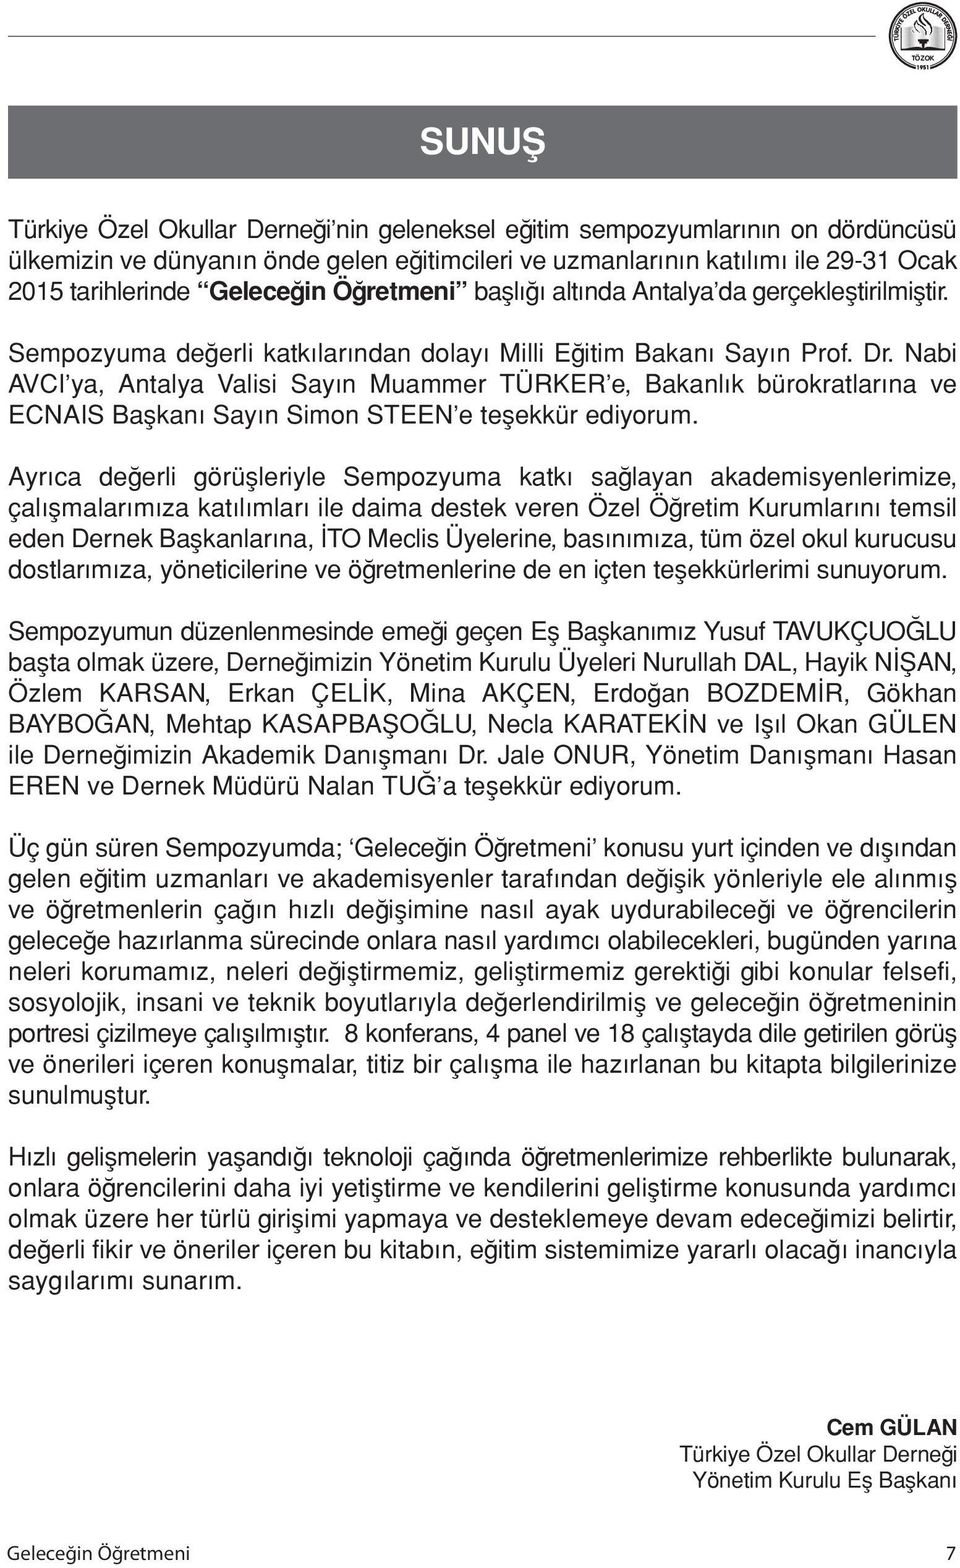 Nabi AVCI ya, Antalya Valisi Sayın Muammer TÜRKER e, Bakanlık bürokratlarına ve ECNAIS Başkanı Sayın Simon STEEN e teşekkür ediyorum.